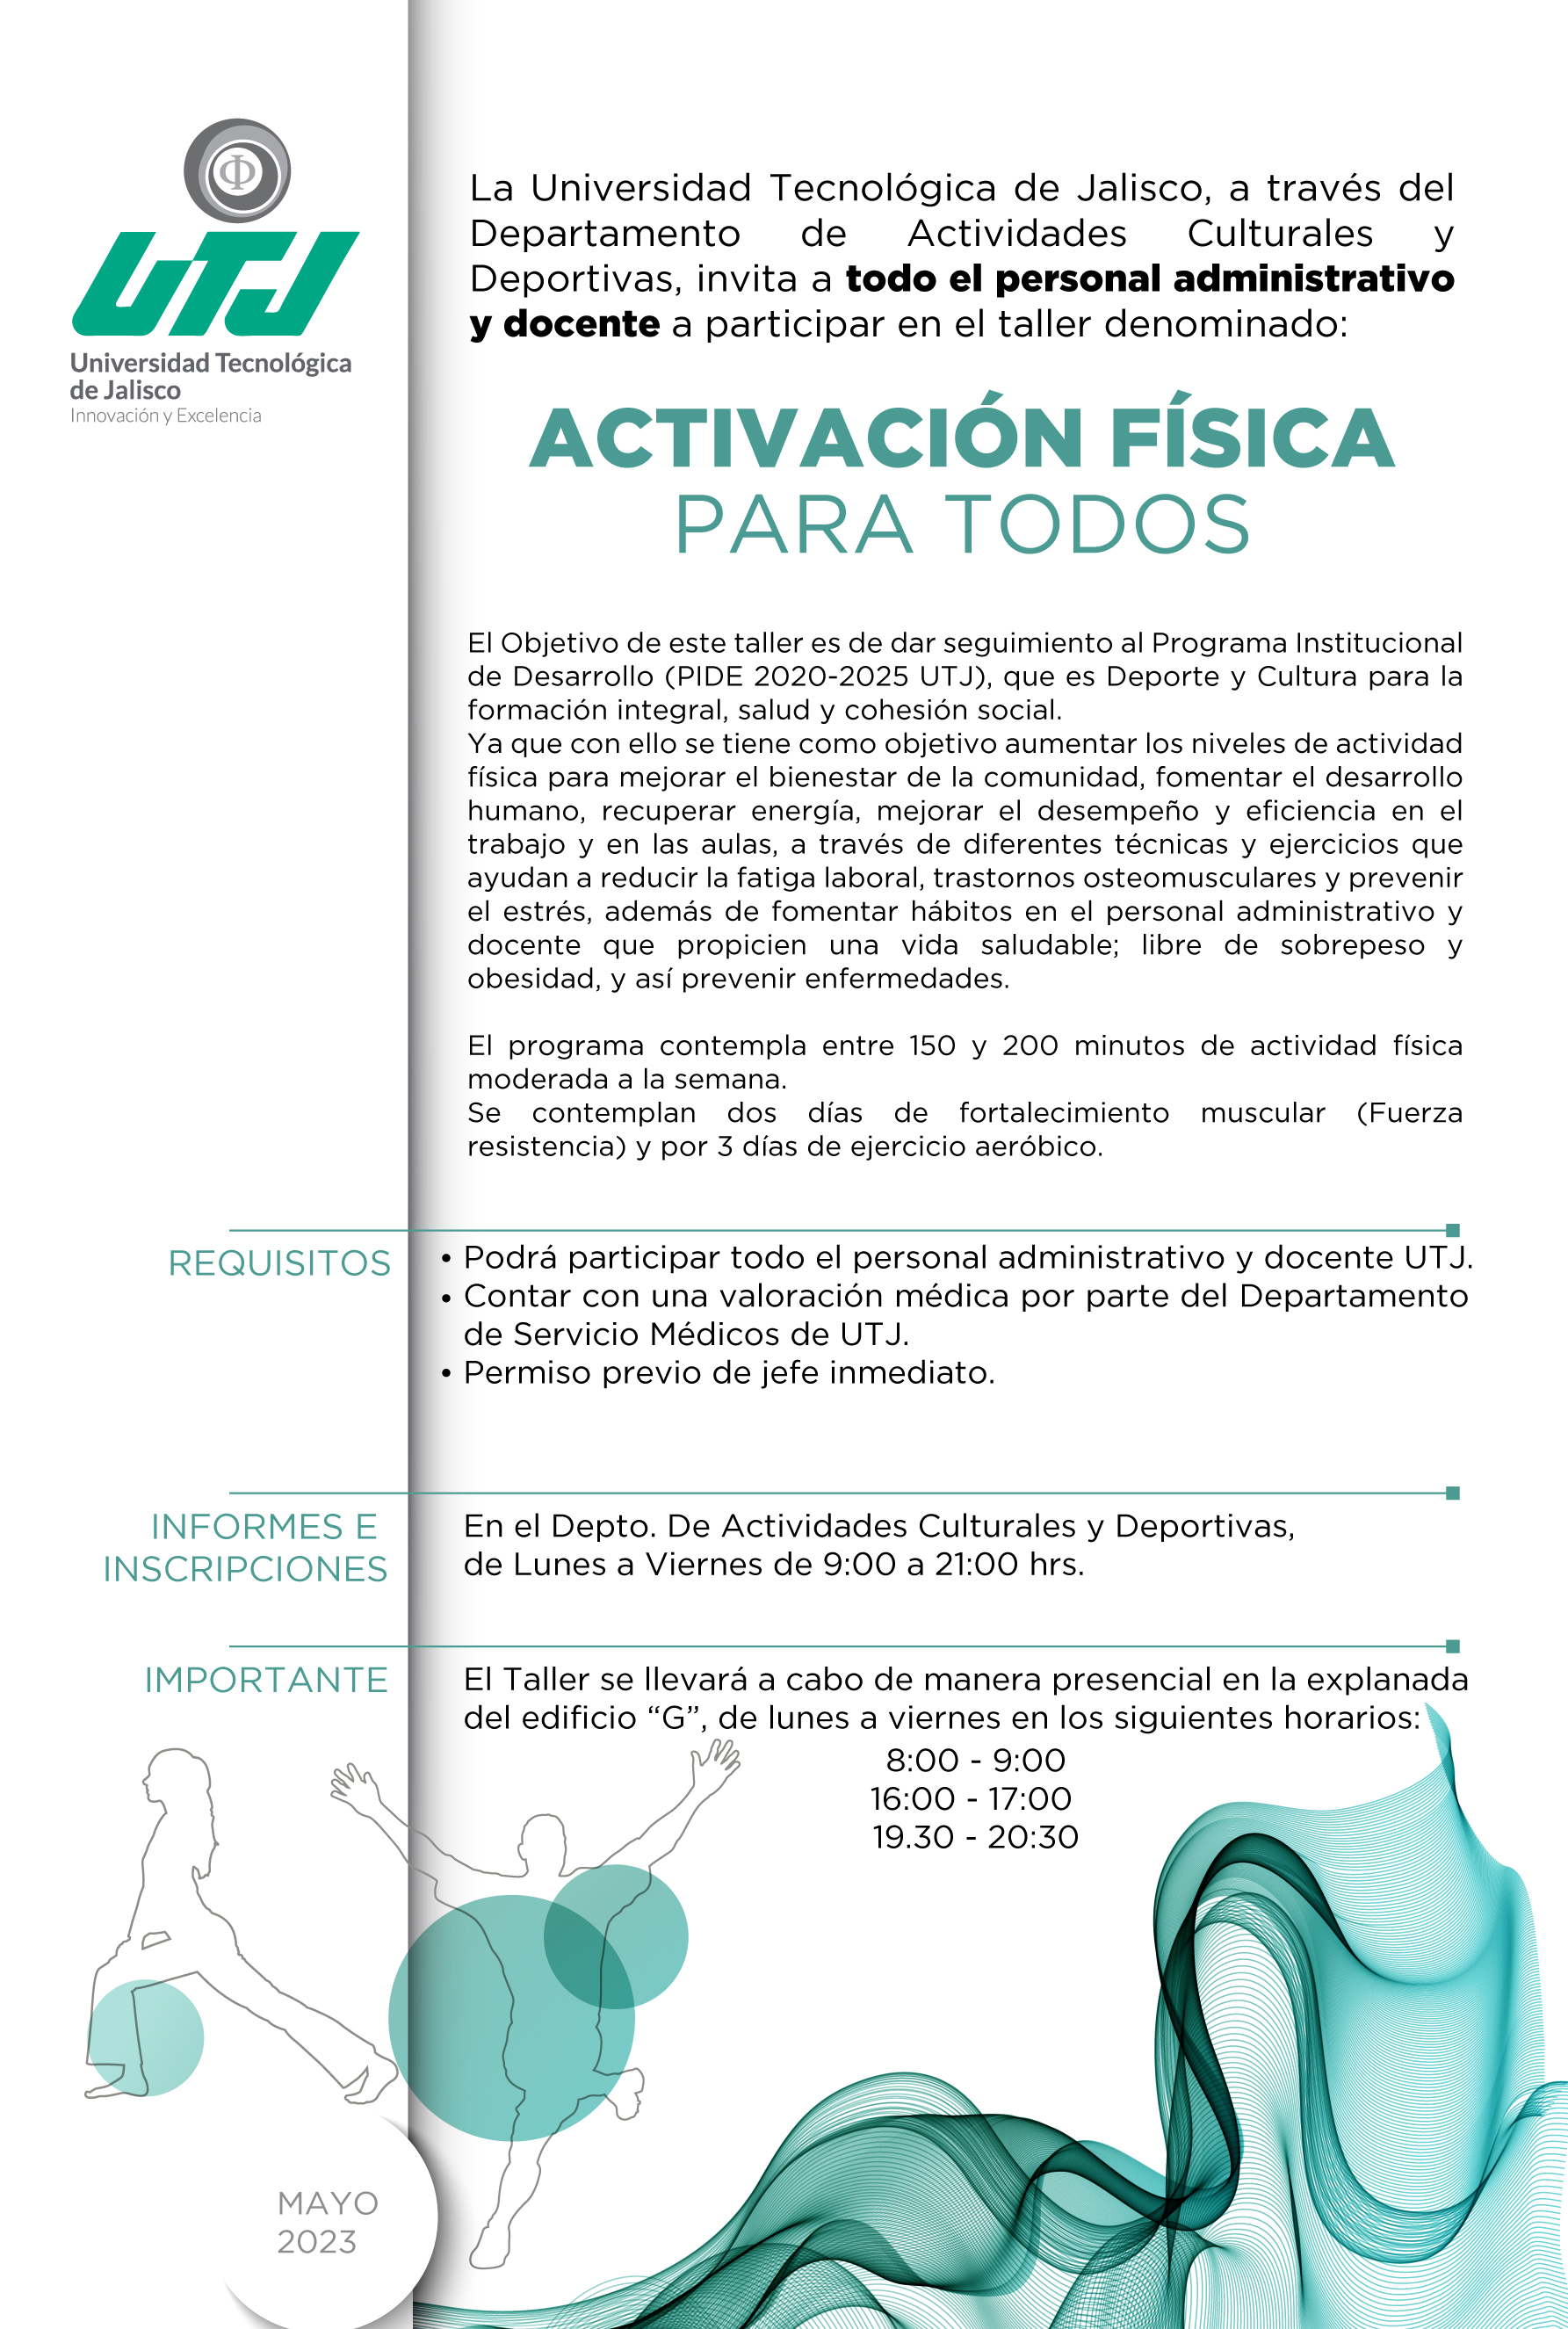 Programa de Activación física para todo el personal administrativo y docente de la UTJ, coordinado por el Departamento de Actividades Culturales y Deportivas.